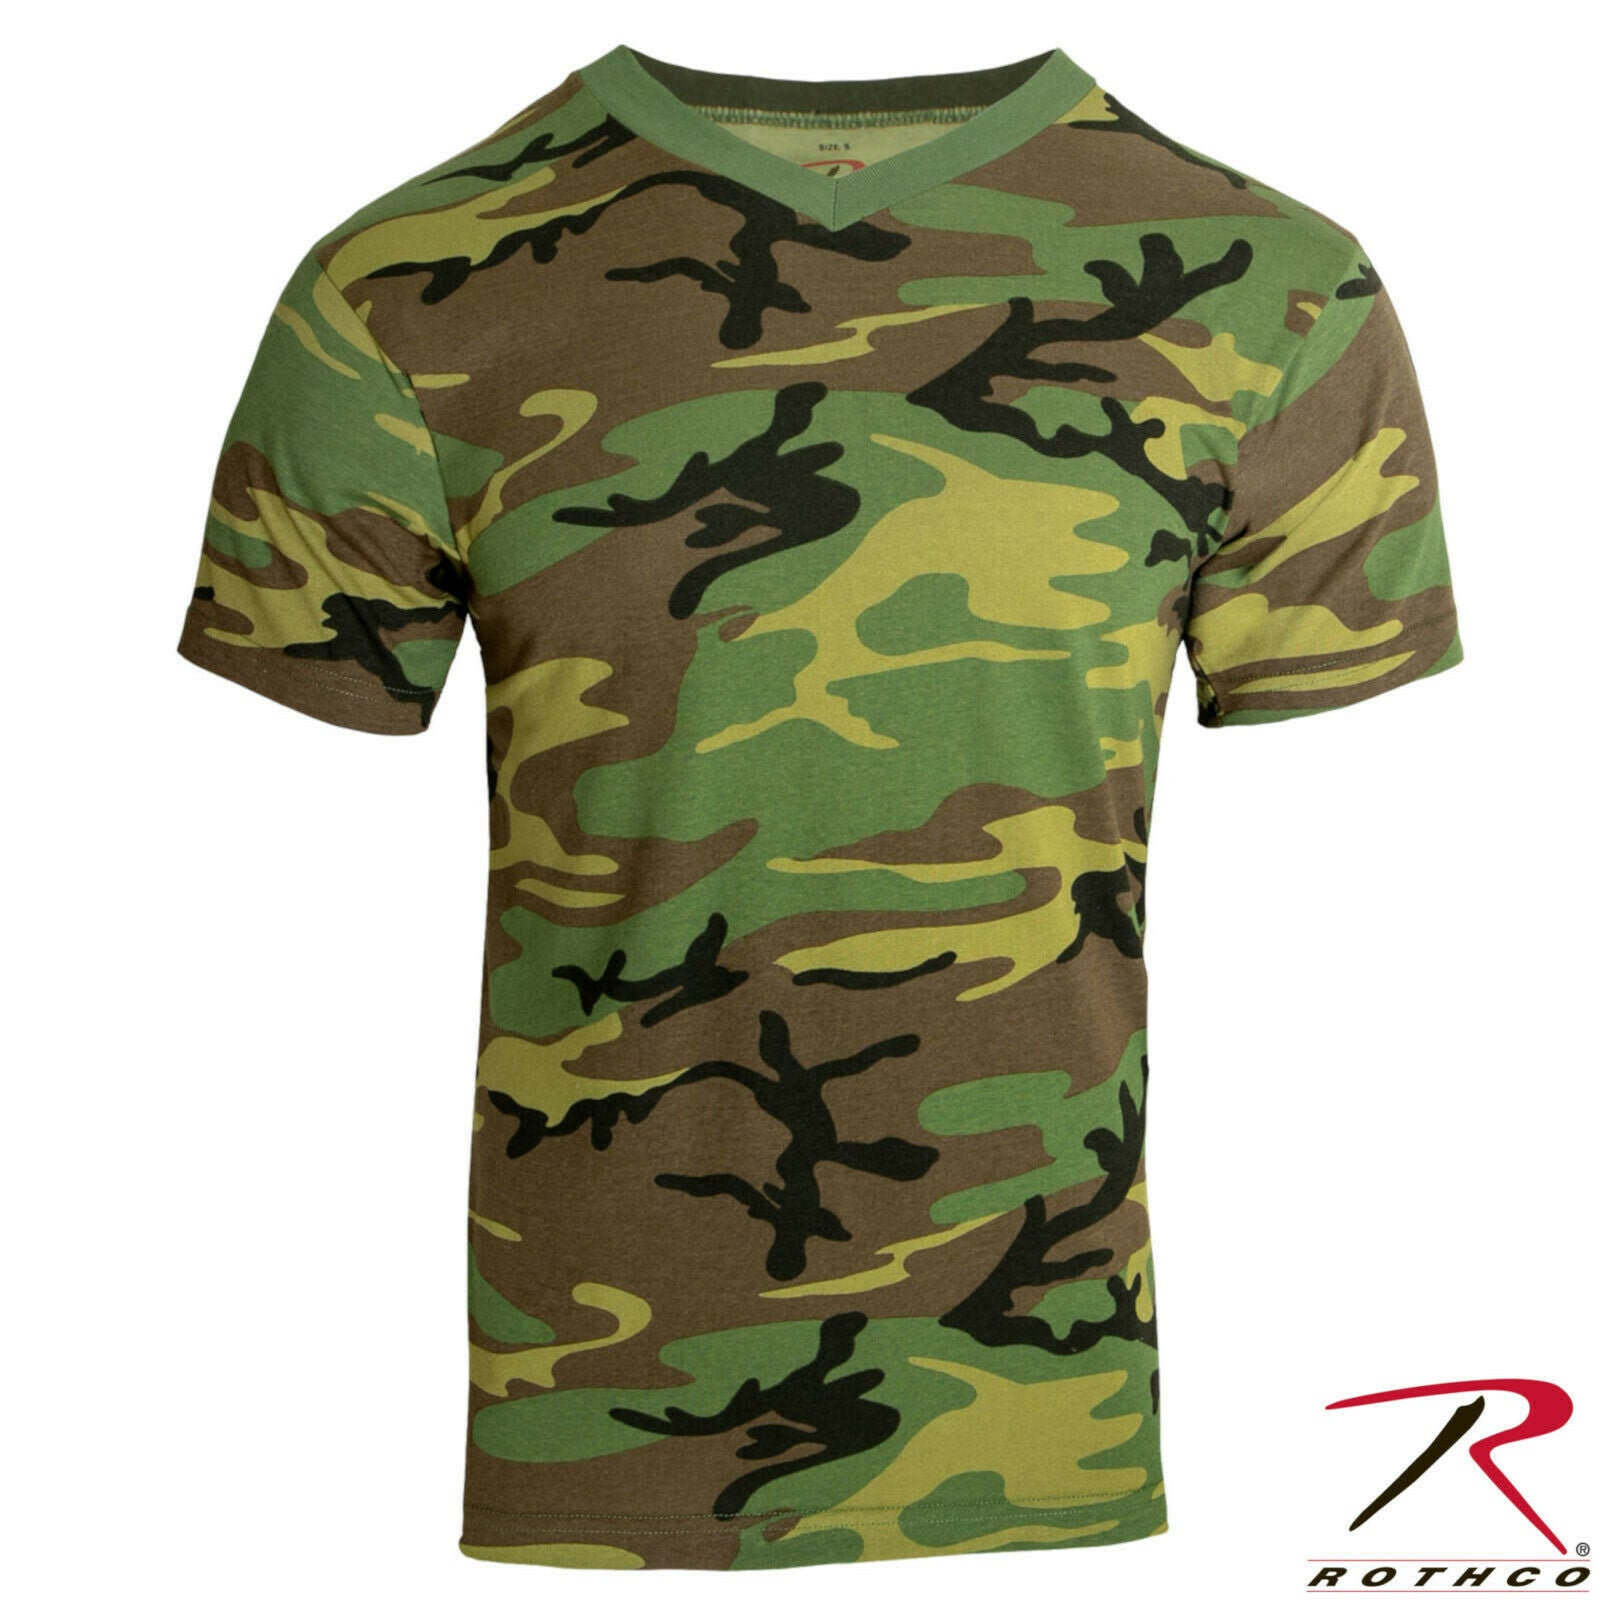 Rothco Men's Camo V-Neck T-Shirt - Woodland Camouflage V-Neck Tee Shir ...